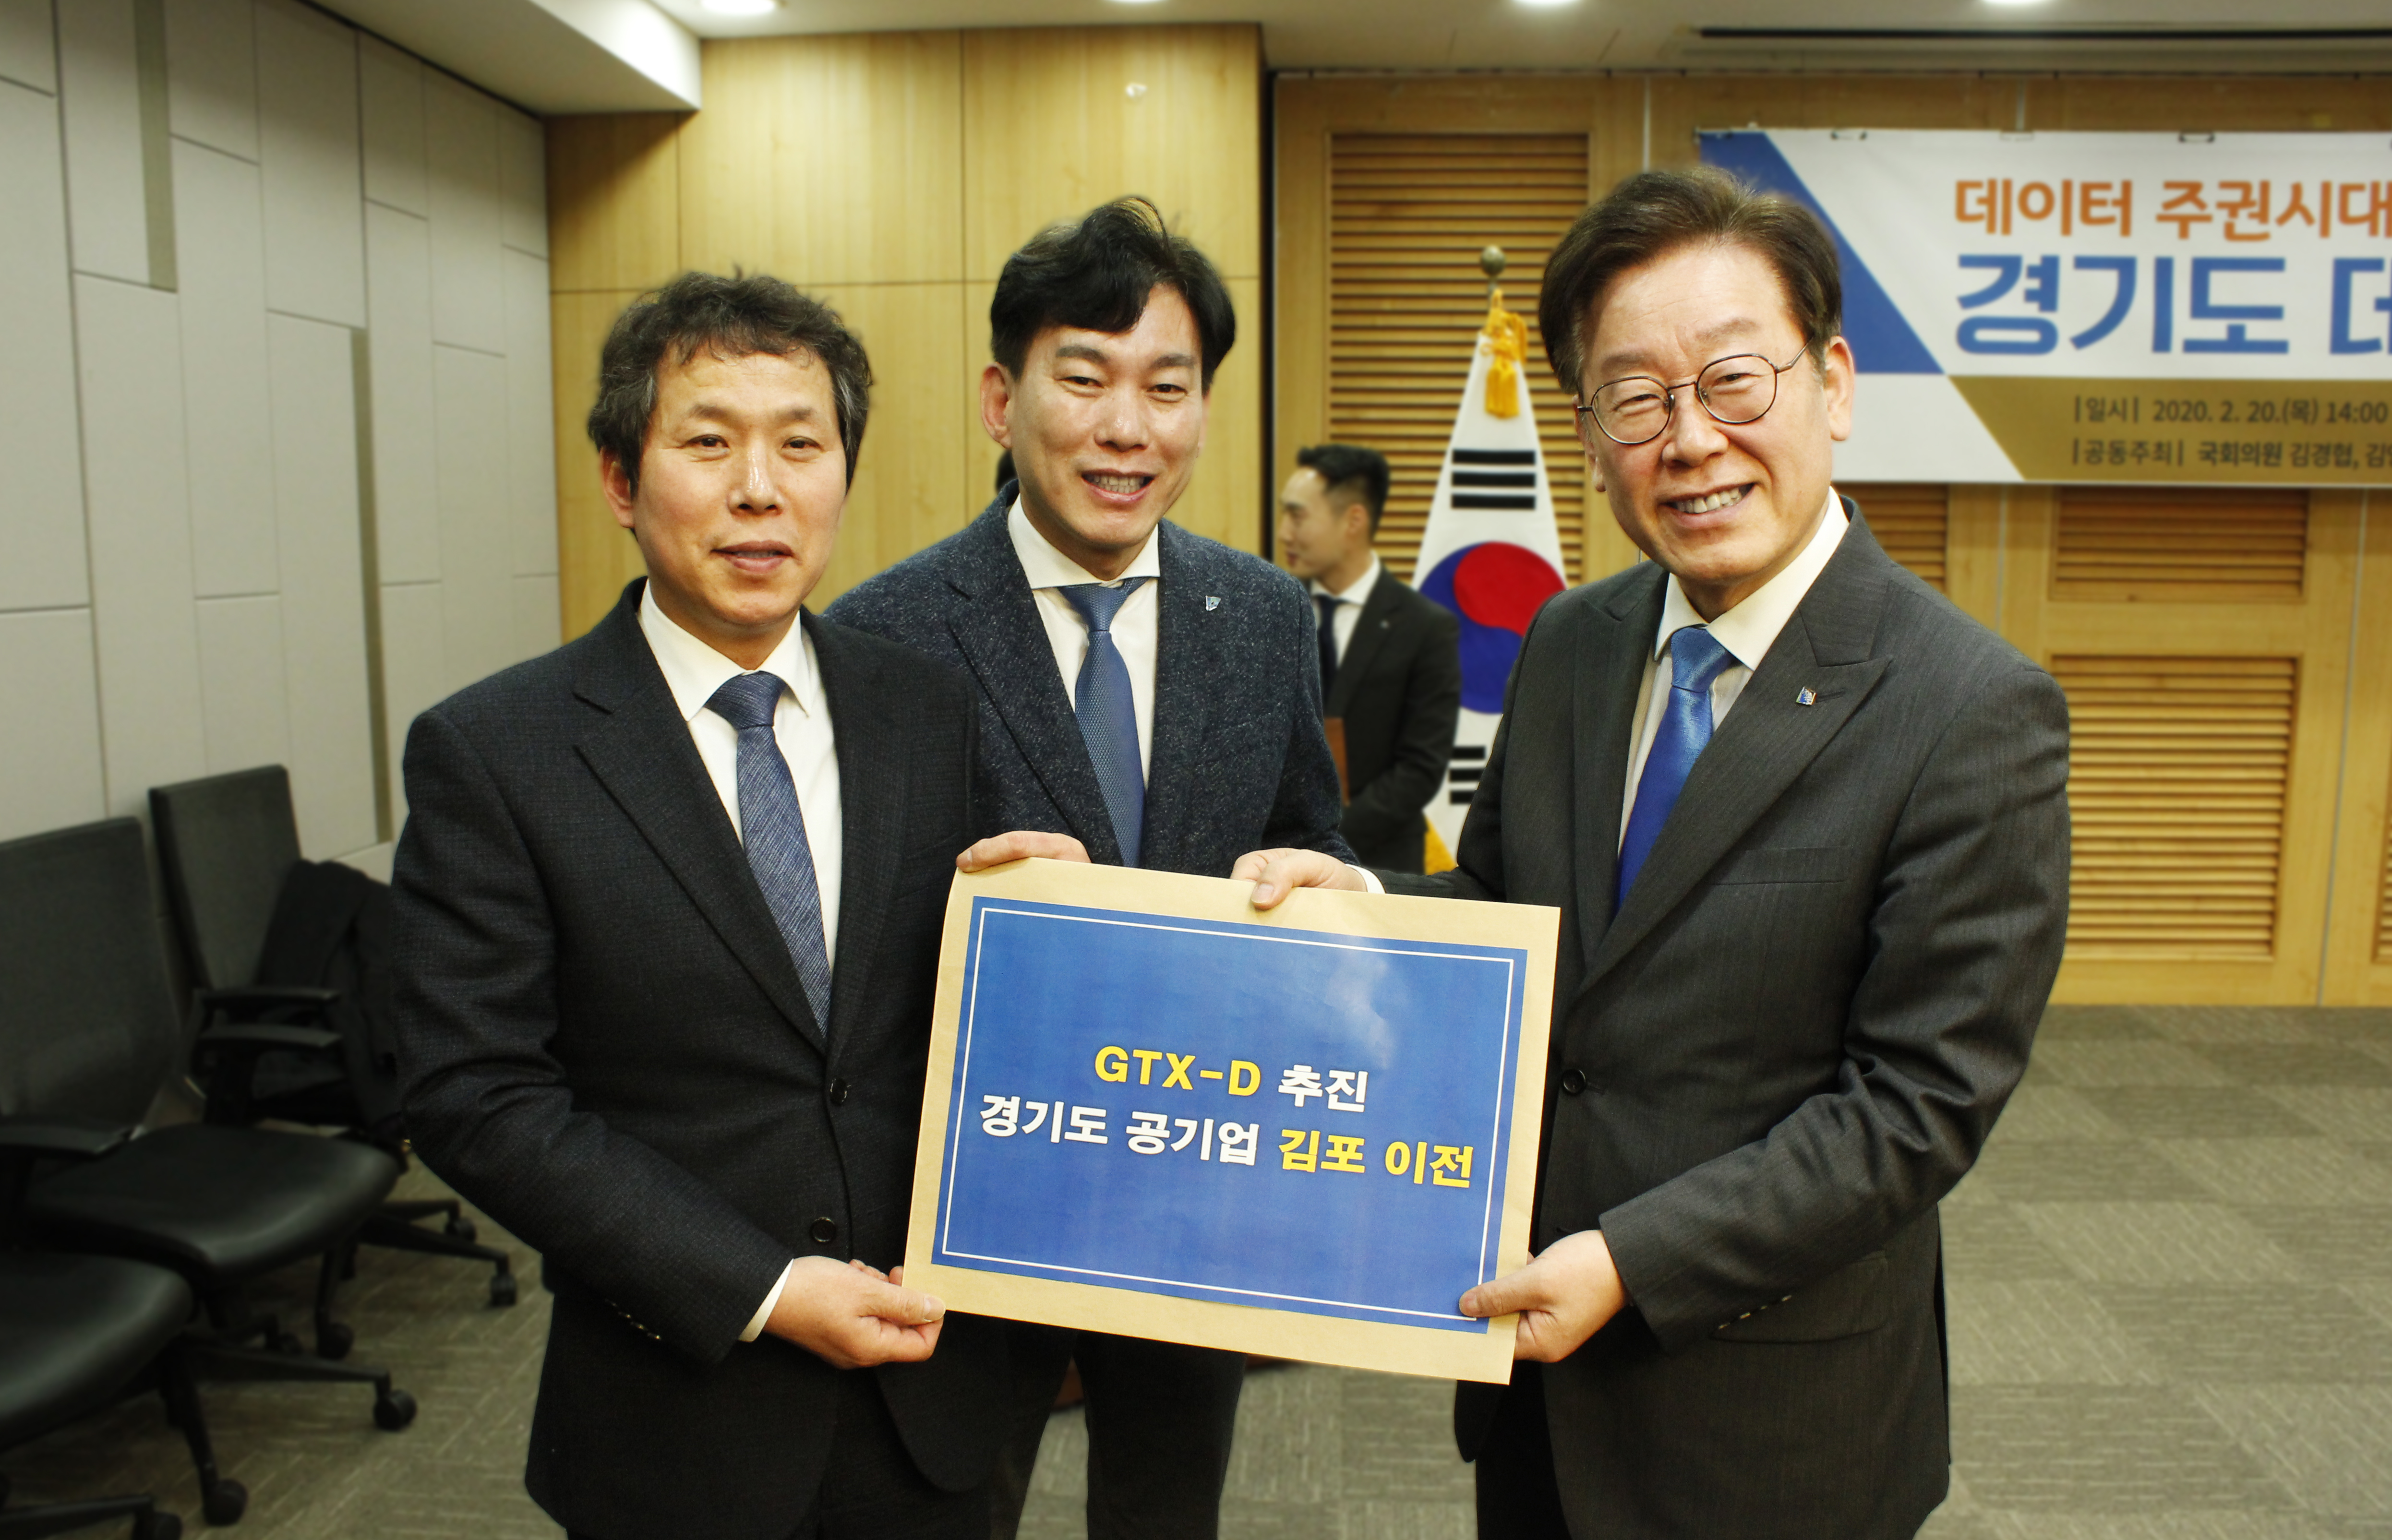 박진영(가운데) 예비후보가 이재명 도지사를 만나 GTX-D와 경기도공기업 유치를 건의했다.